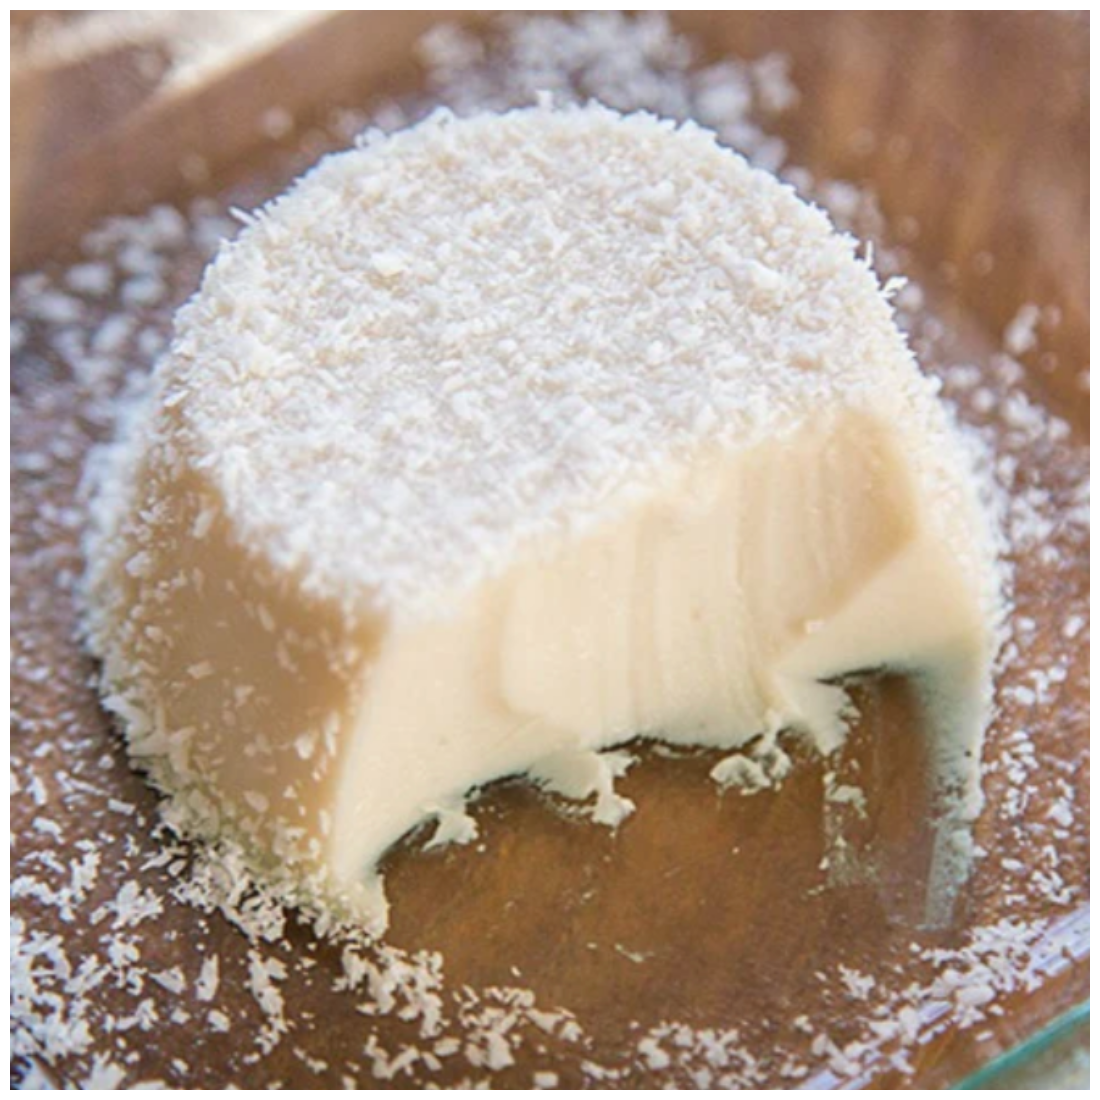 Blanc-manger coco allégé, crème dessert minceur